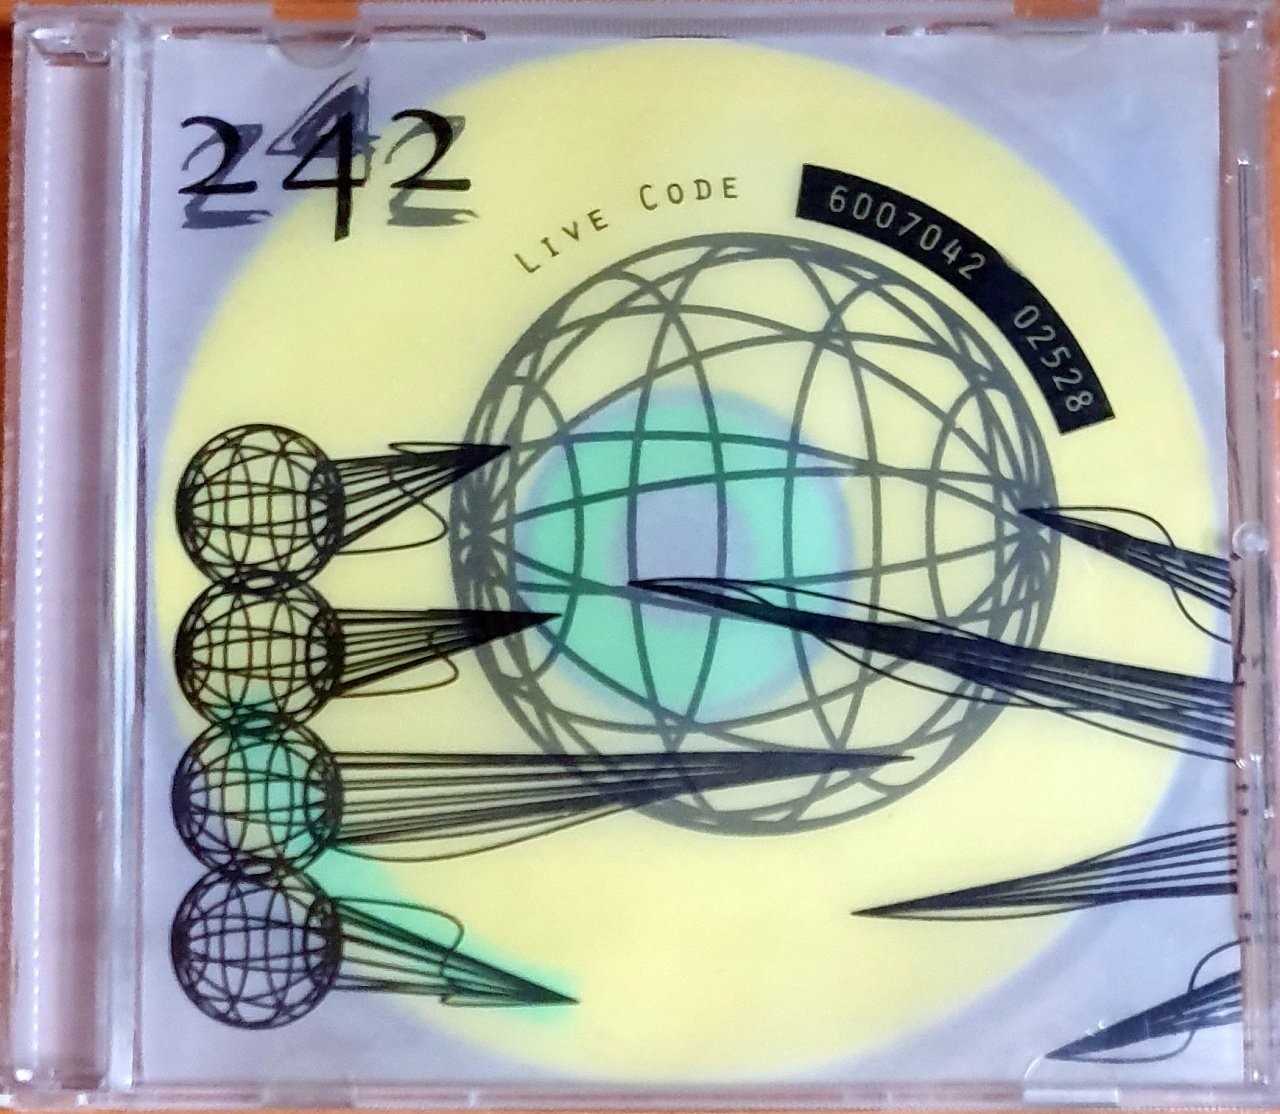 FRONT 242 - LIVE CODE (1994) - CD NEVER RECORDS 2.EL